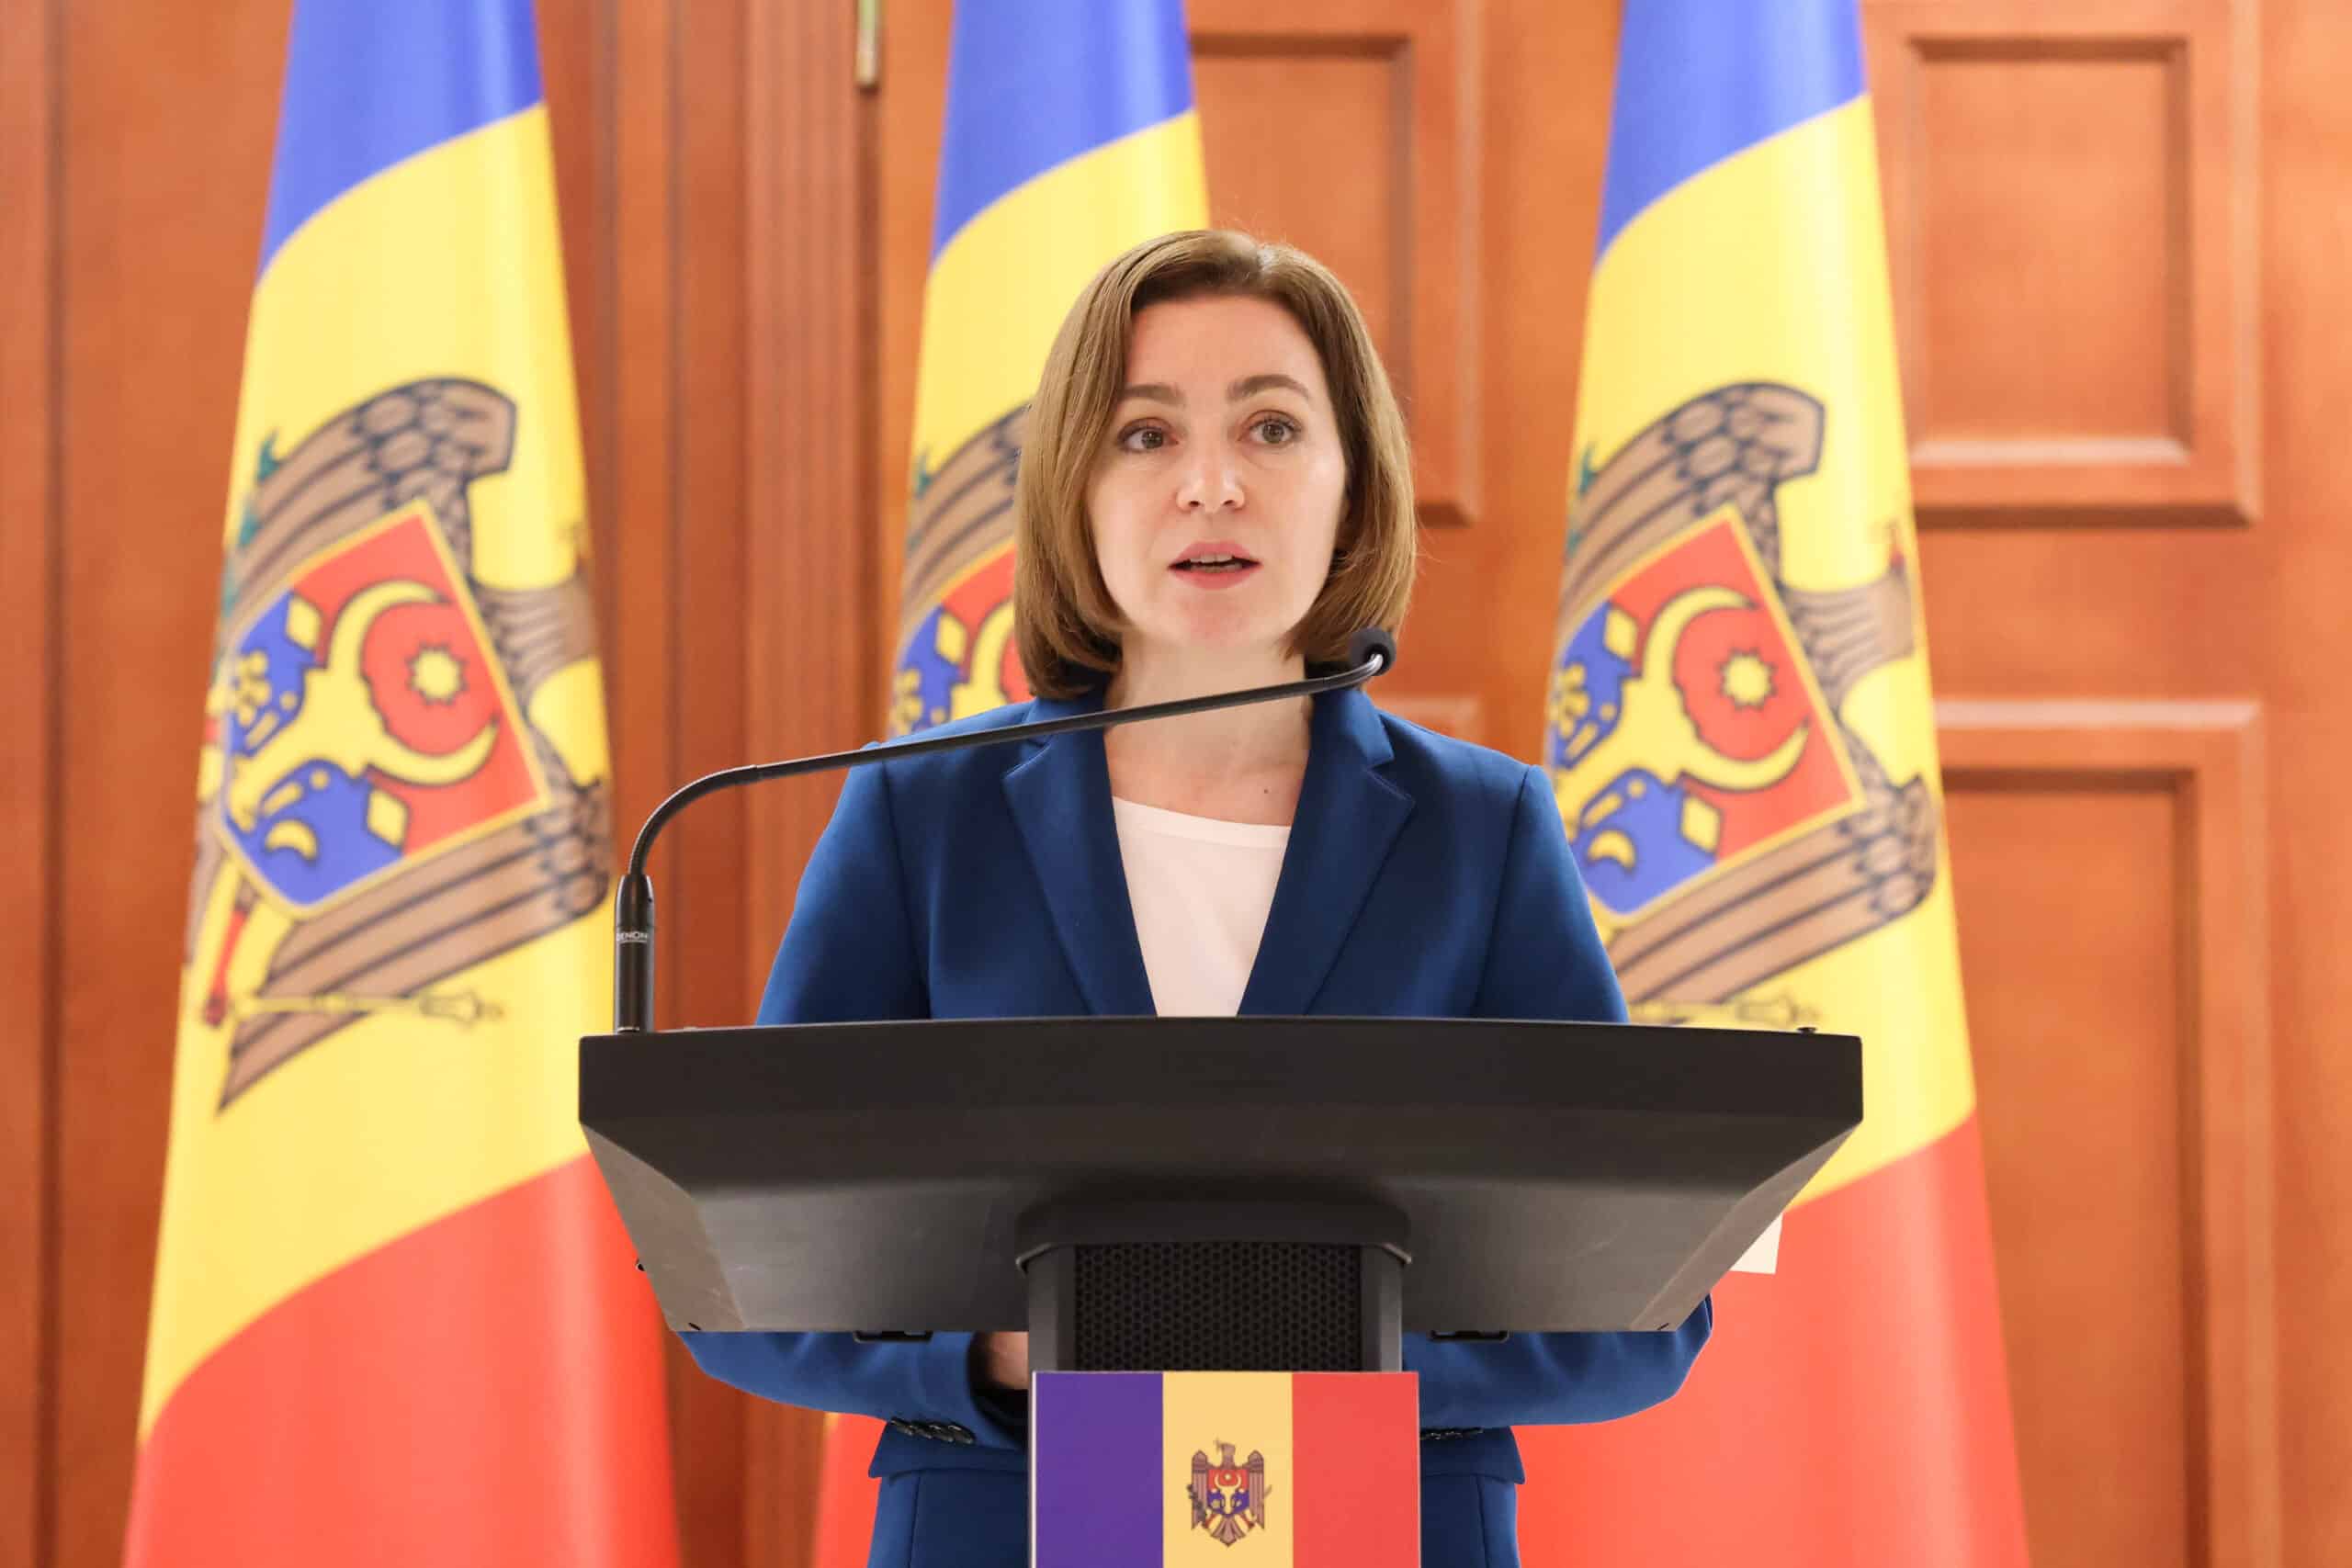 Přečtete si více ze článku Začíná summit Evropského politického společenství v Moldavsku, otevře témata bezpečnosti, energetiky a konektivity